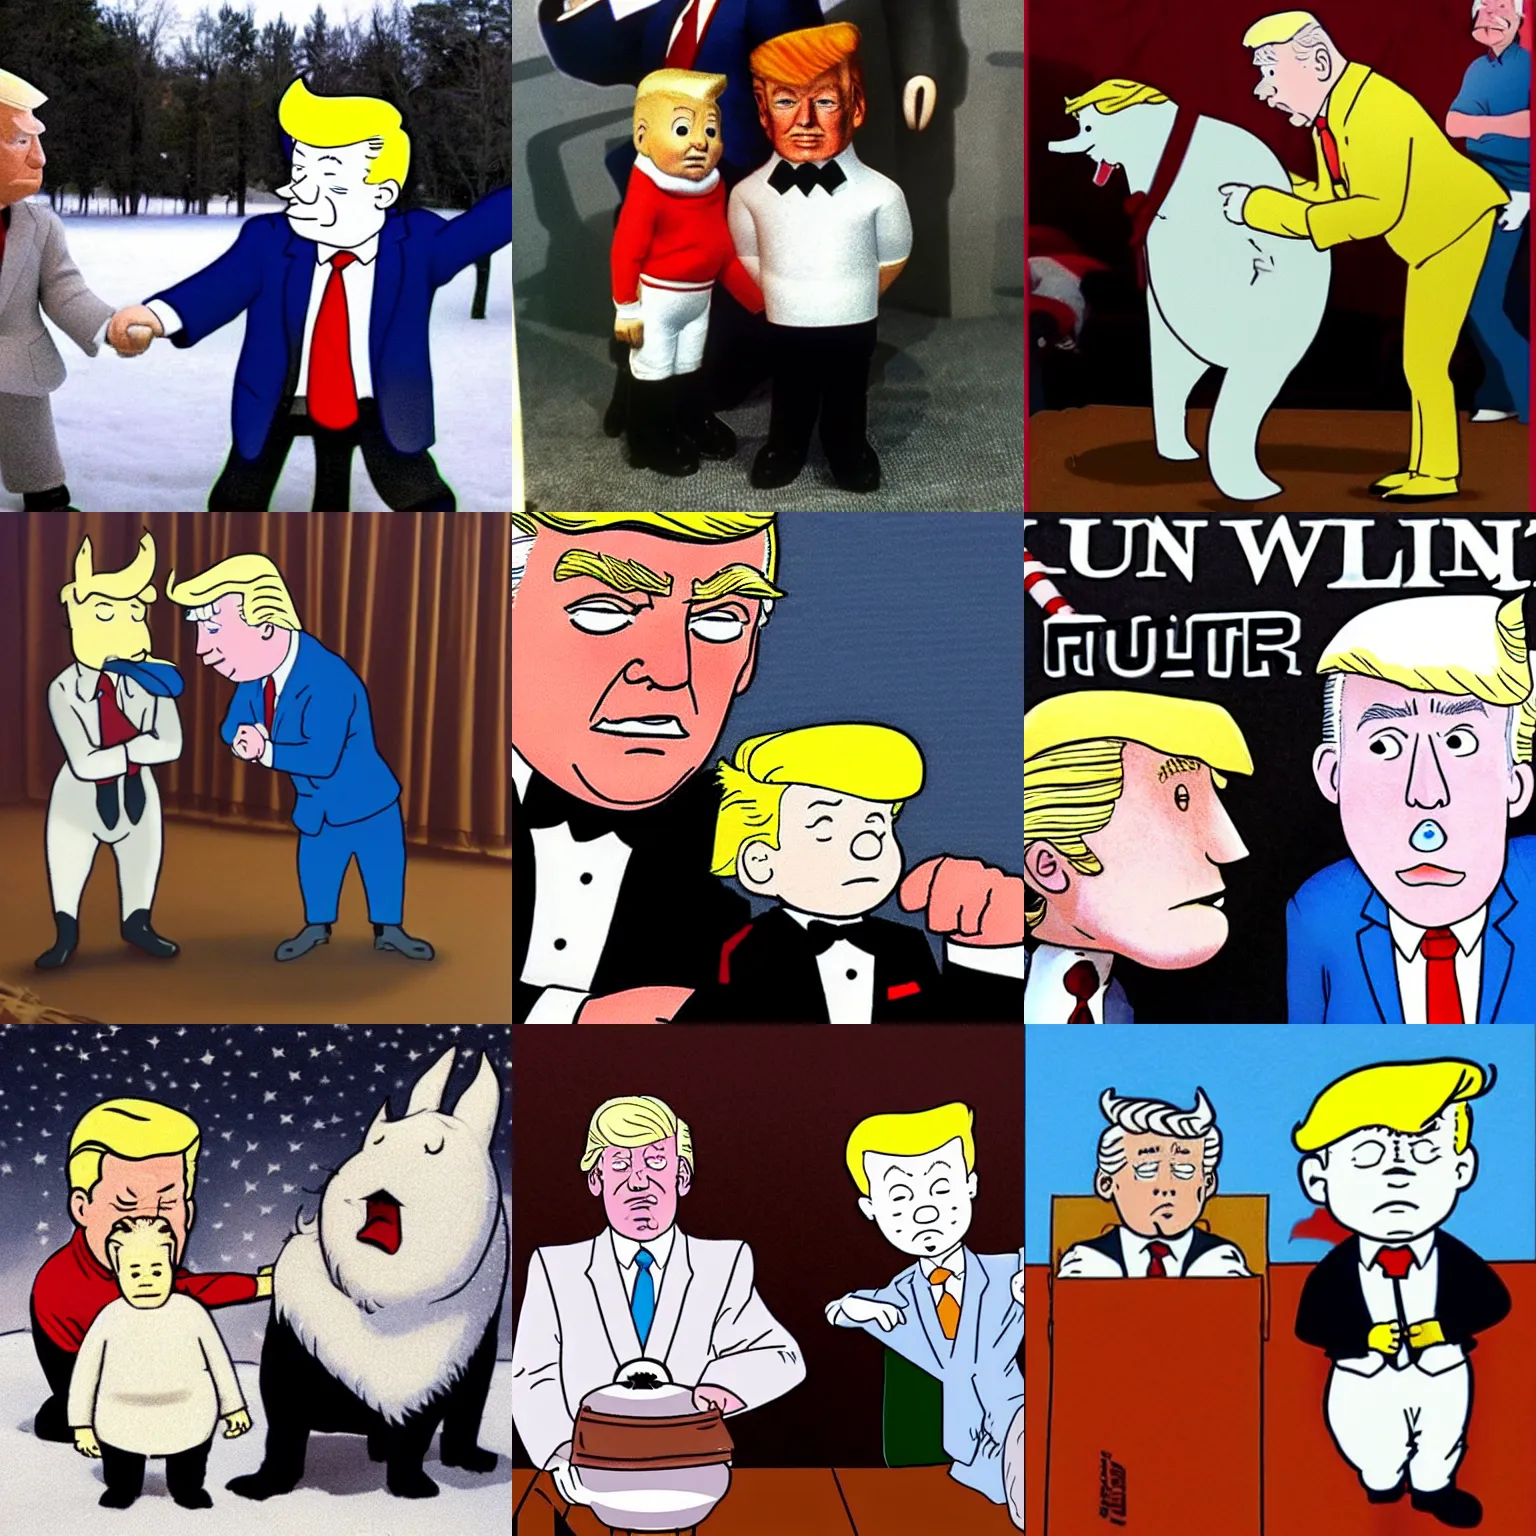 Image similar to Snowy and Tintin as Donald Trump